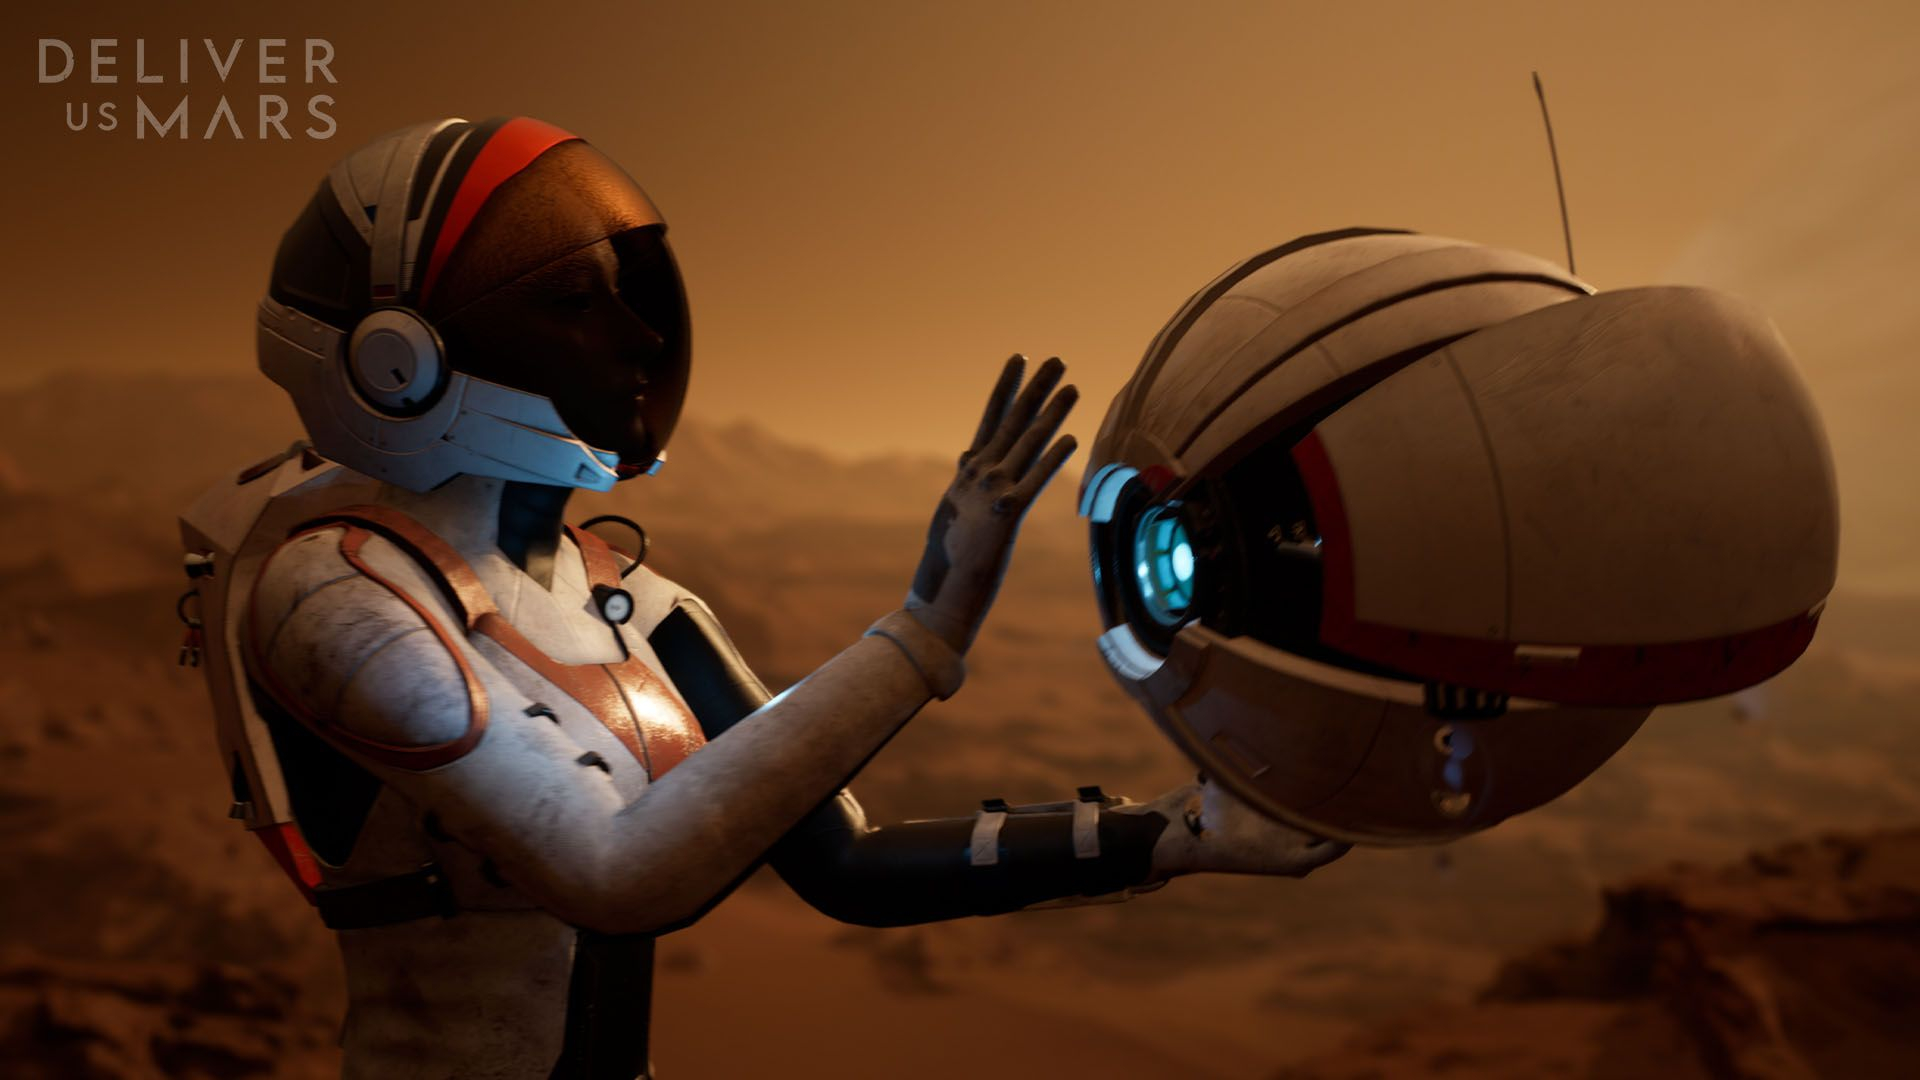 13+ минут нового геймплея научно-фантастической игры Deliver Us Mars: с сайта NEWXBOXONE.RU